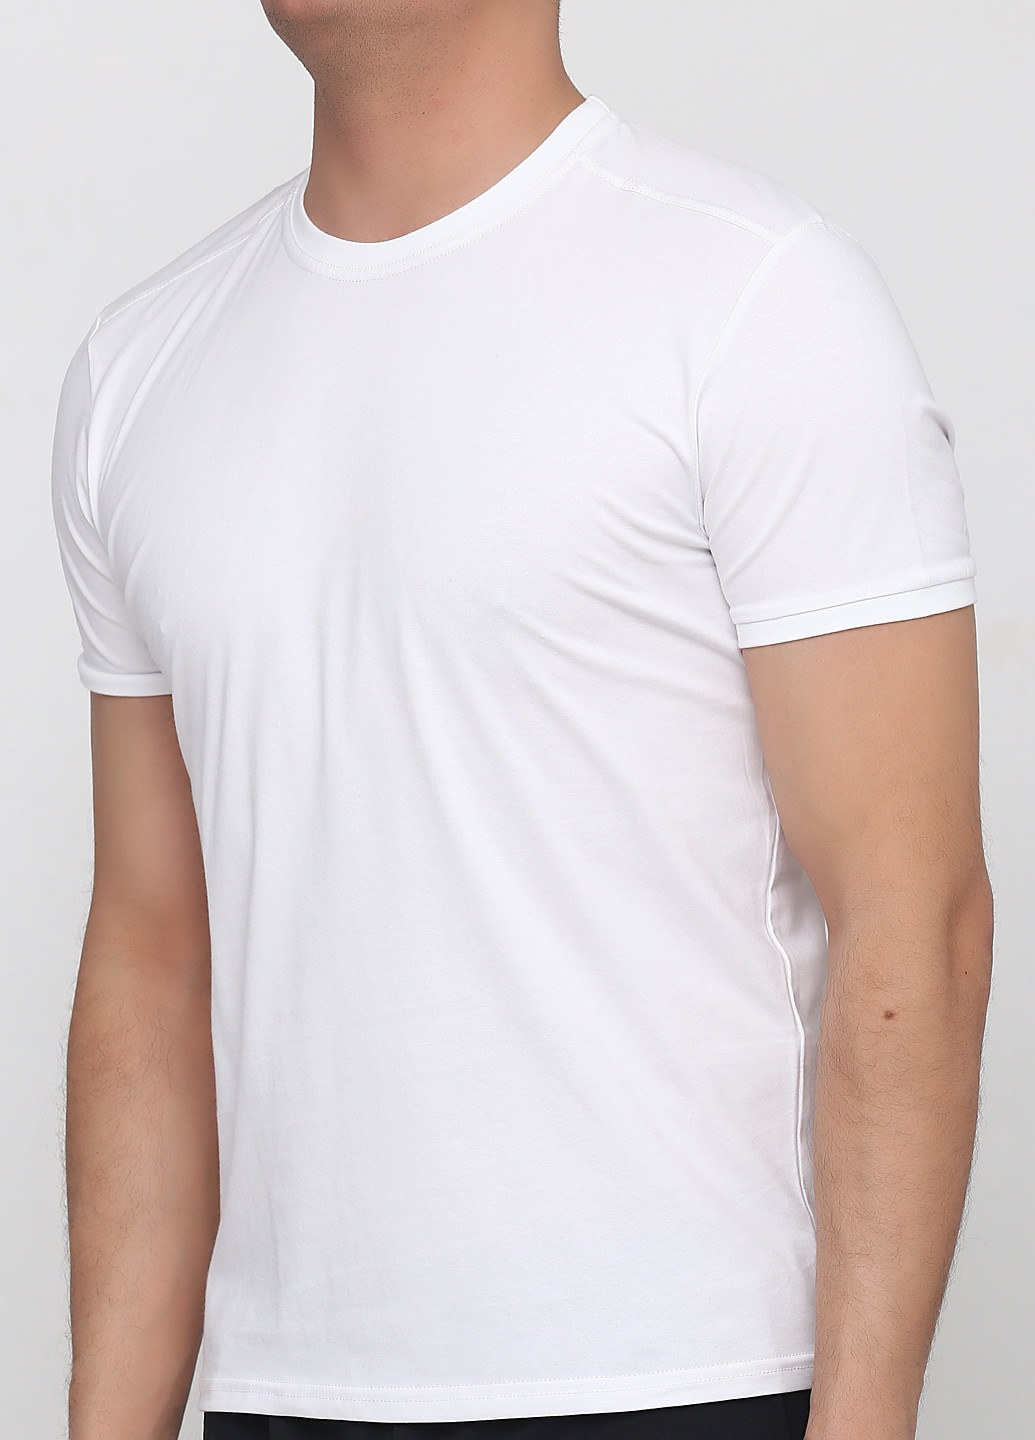 Біла футболка чоловіча 19м440-24 біла Malta